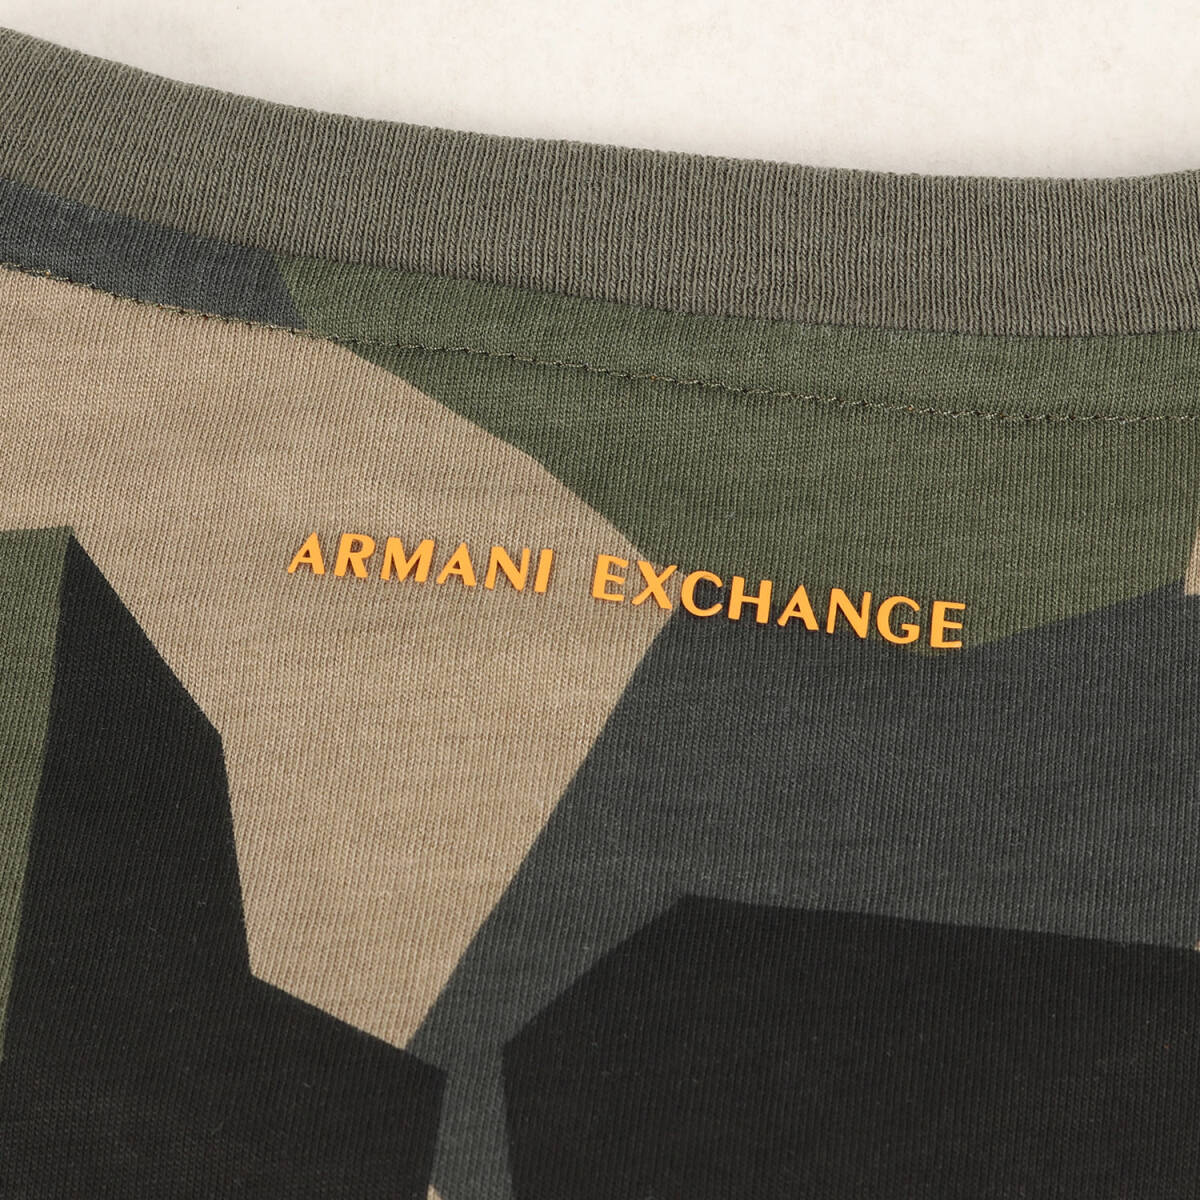 ARMANI EXCHANGE アルマーニエクスチェンジ Tシャツ:L カモ プリント クルーネック 半袖Tシャツ / 迷彩 総柄 カーキ グレー ベージュ_画像4